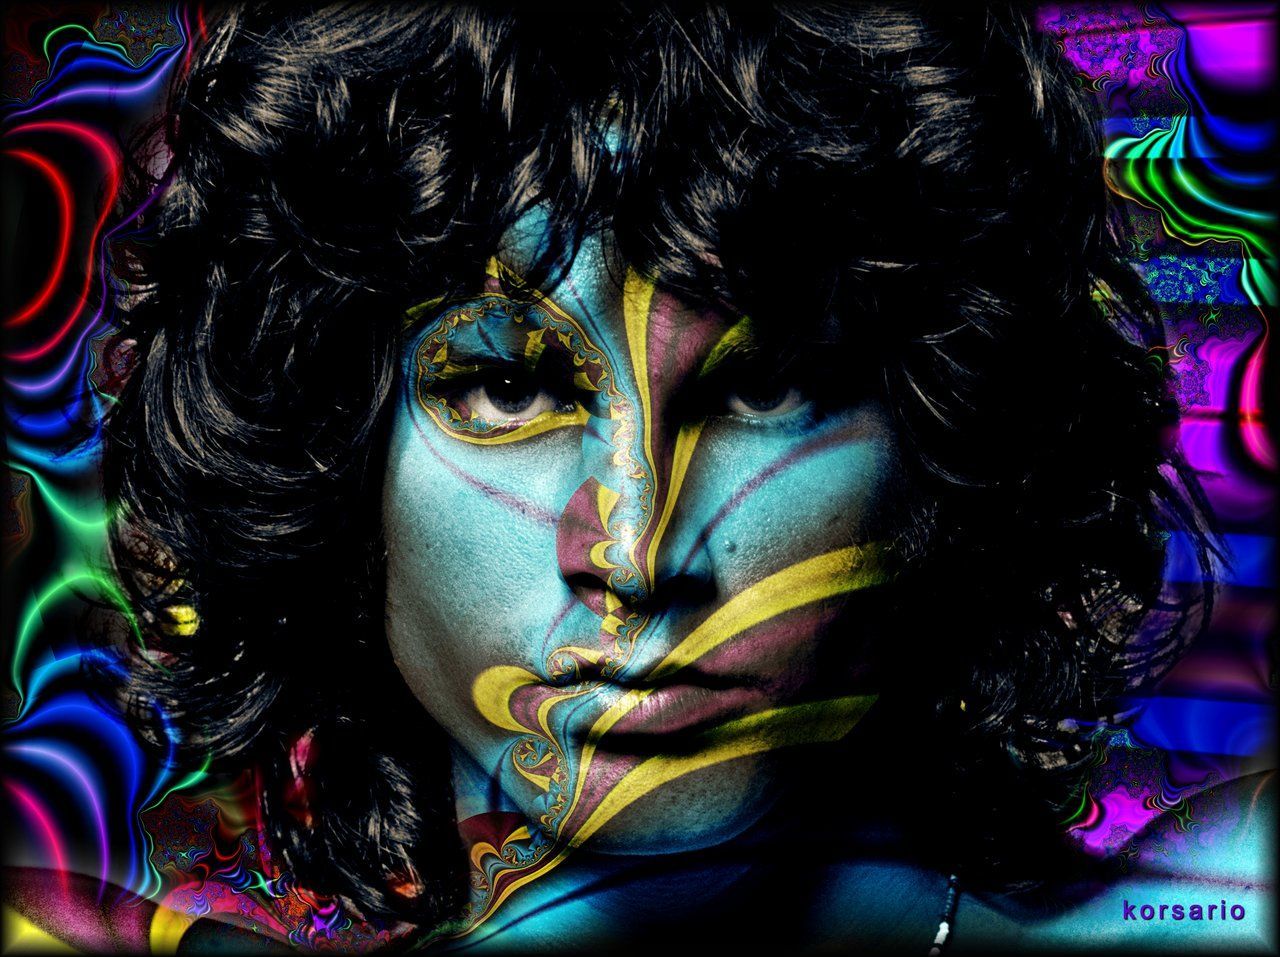 Jim Morrison Wallpaper Full HD Q737zp5 4usky